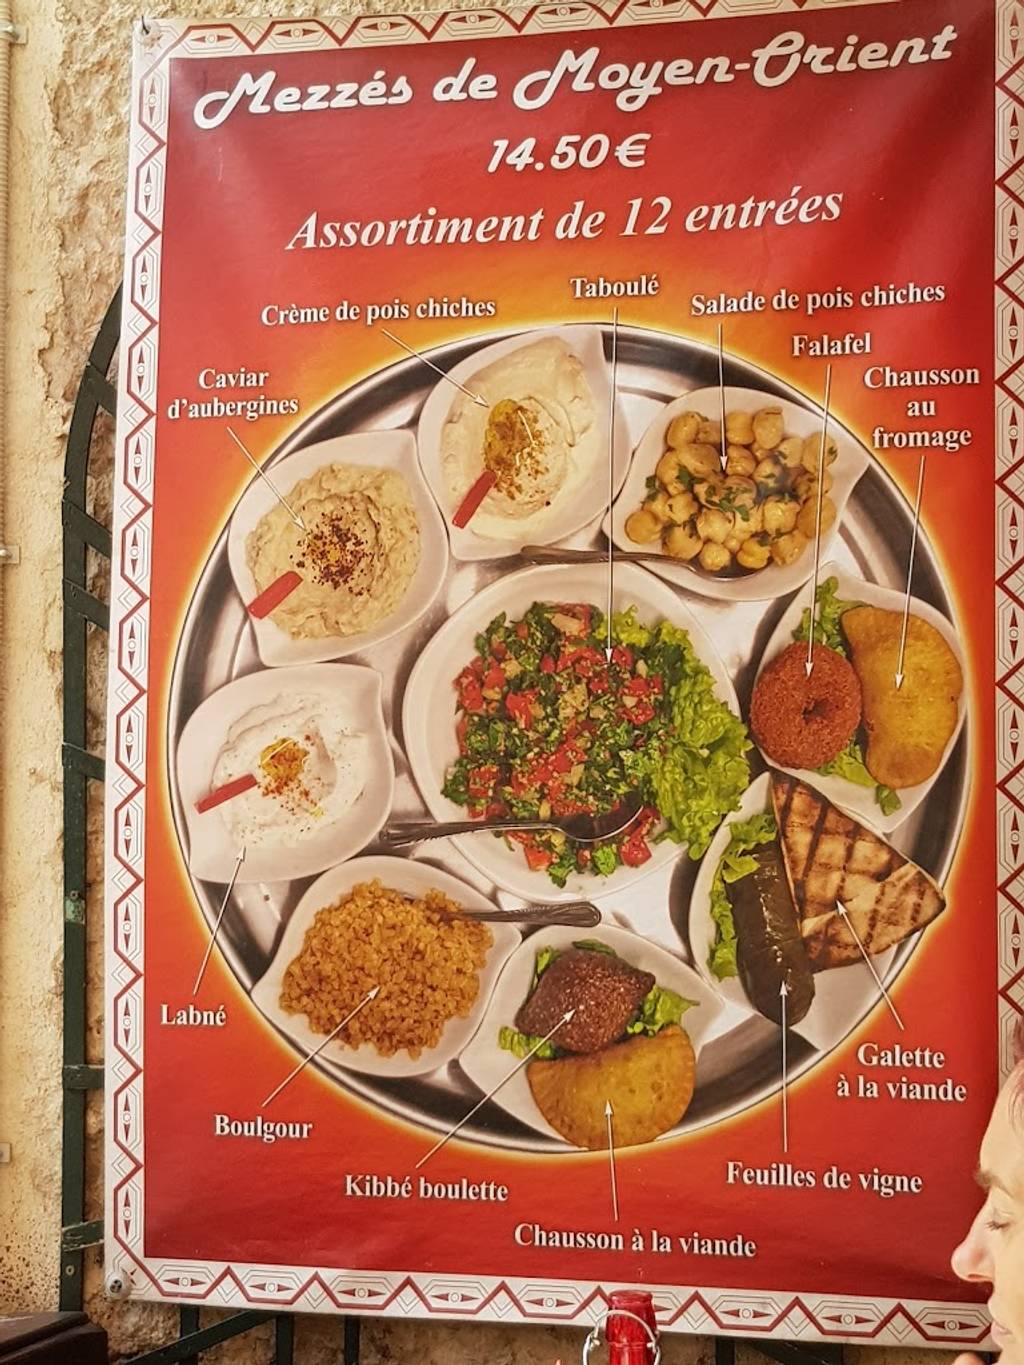 Le Moyen Orient Libanais Marseille - Dish Food Cuisine Ingredient Meal